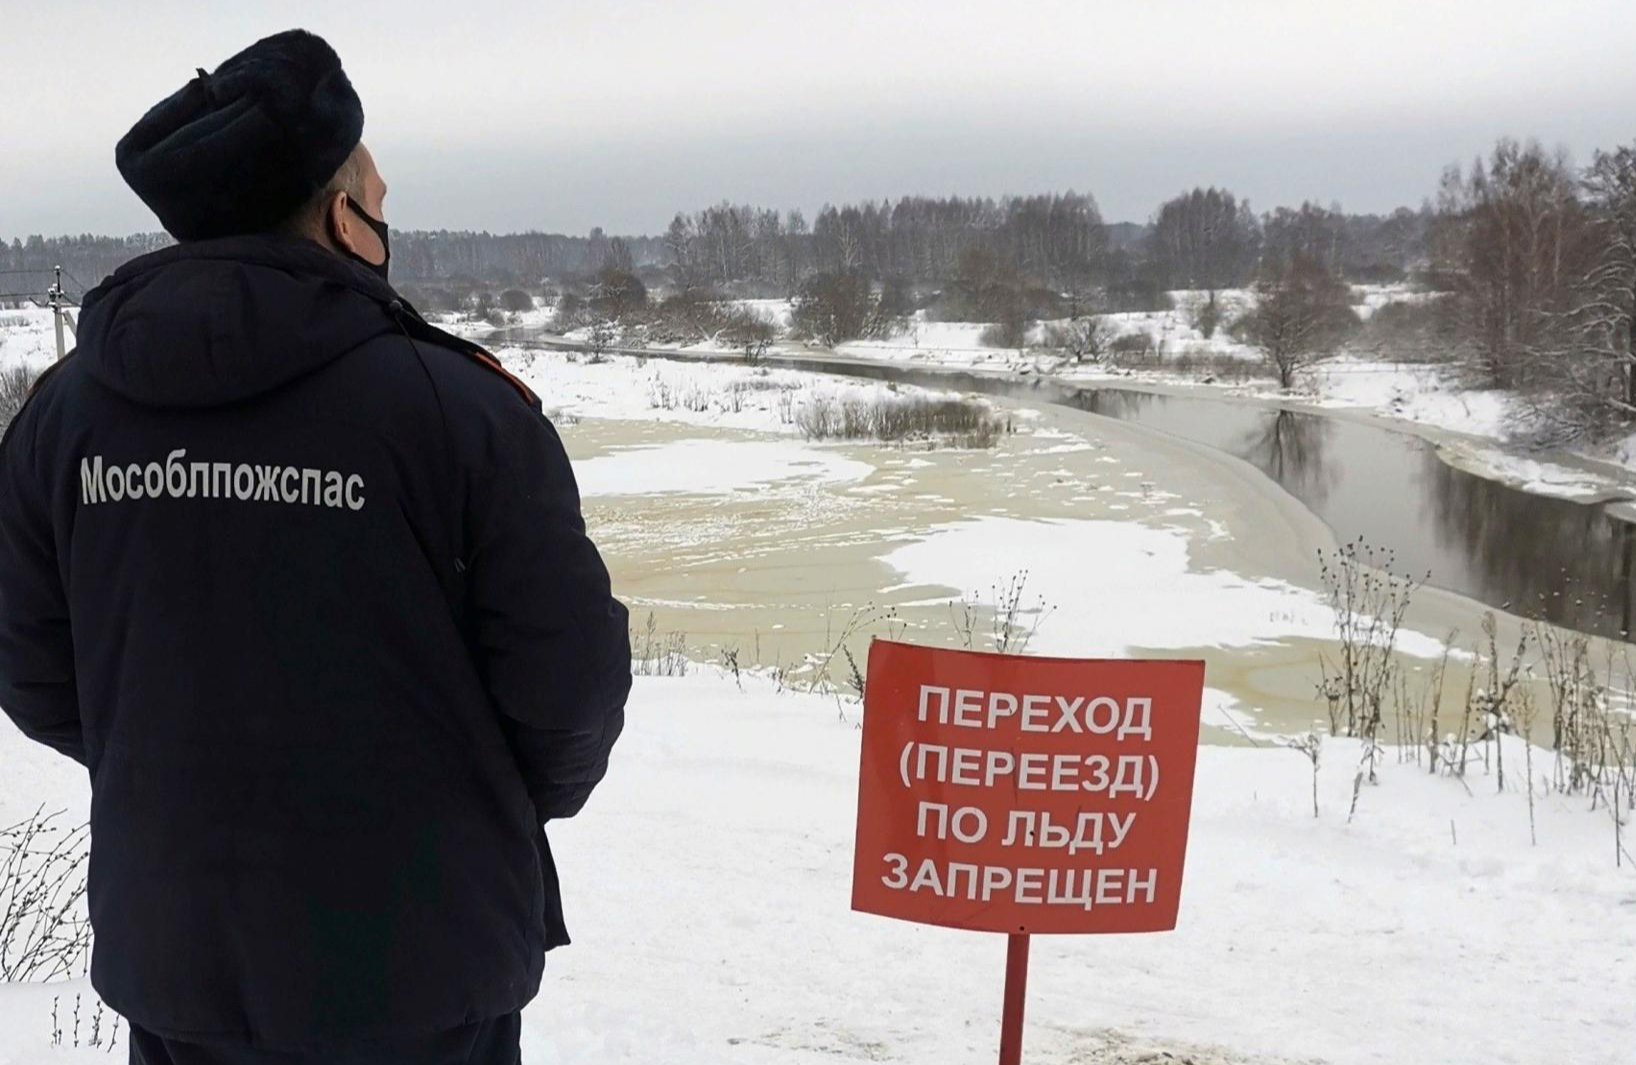 Лед может треснуть в любой момент: спасатели предупредили об опасности выхода на лед озера Большое